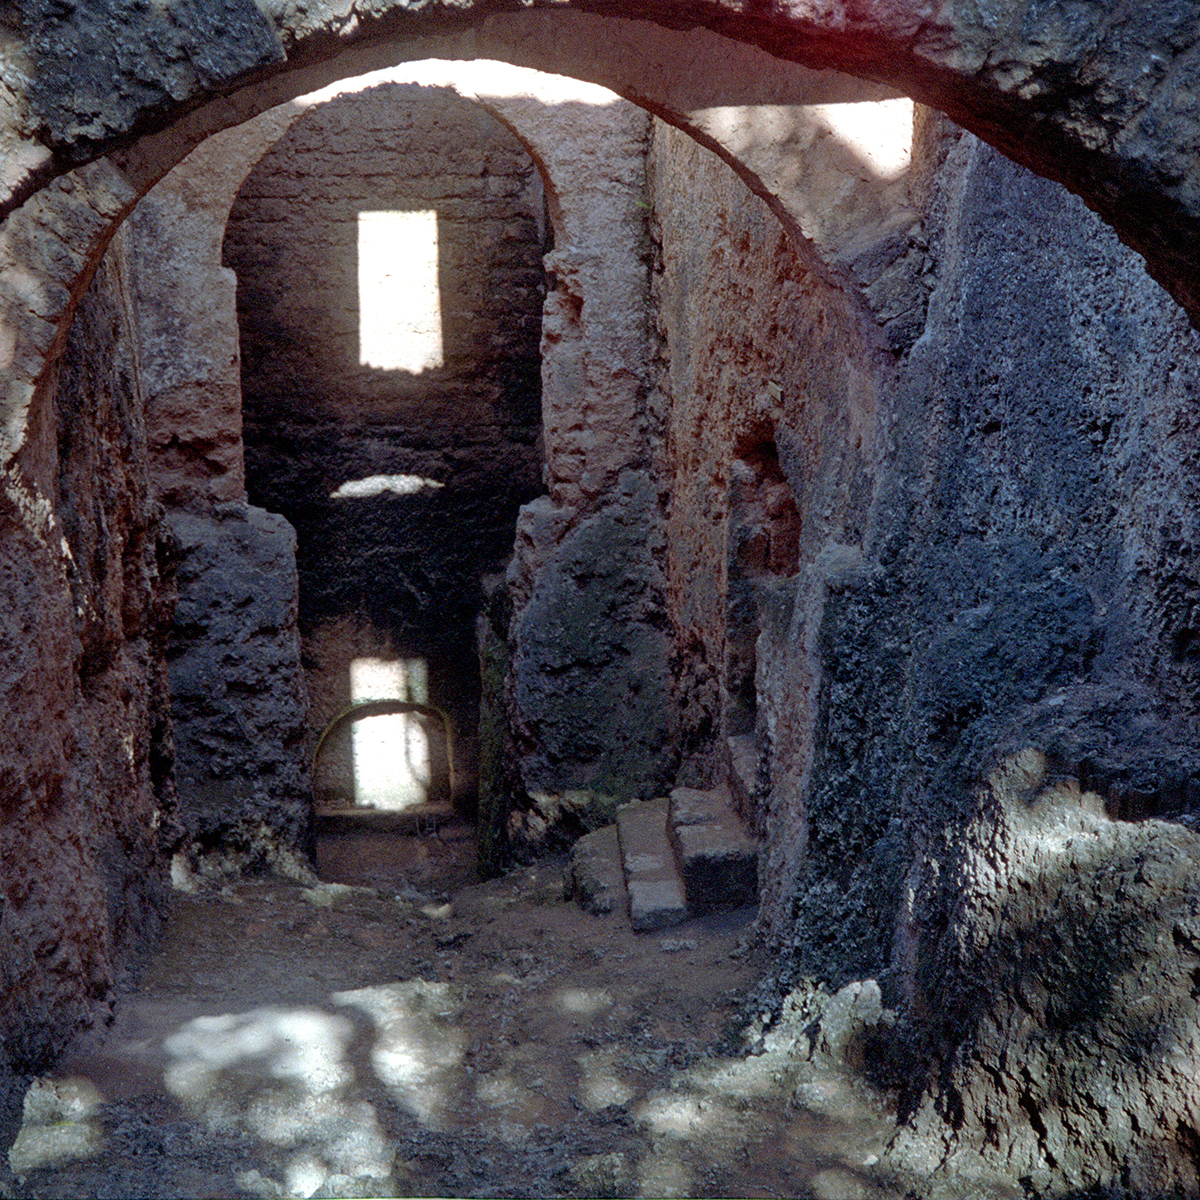 Fort Jesus as it appeared in 1988